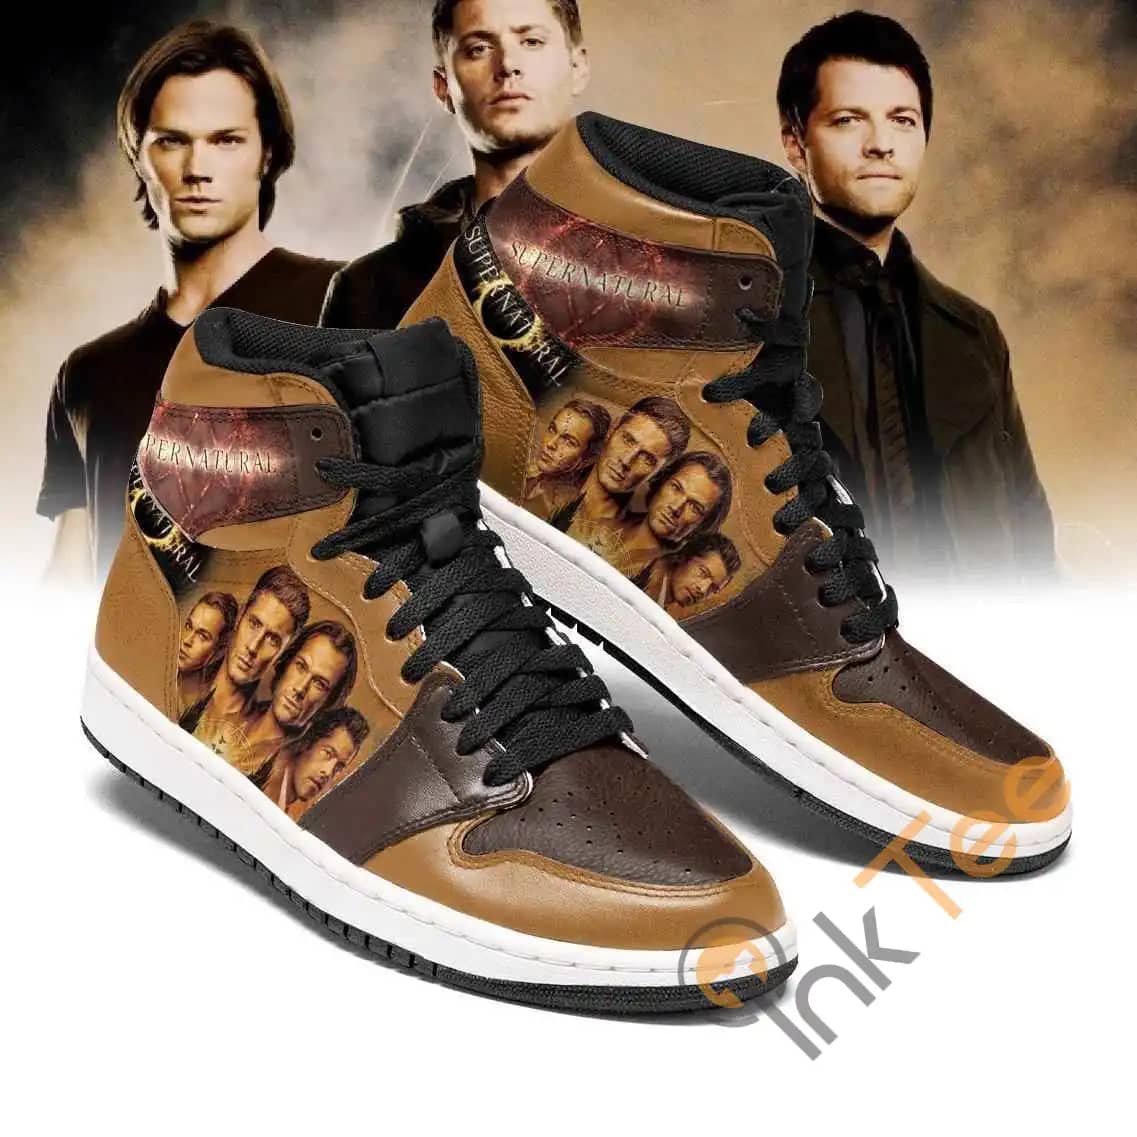 Supernatural Tv Series Air Jordan Shoes